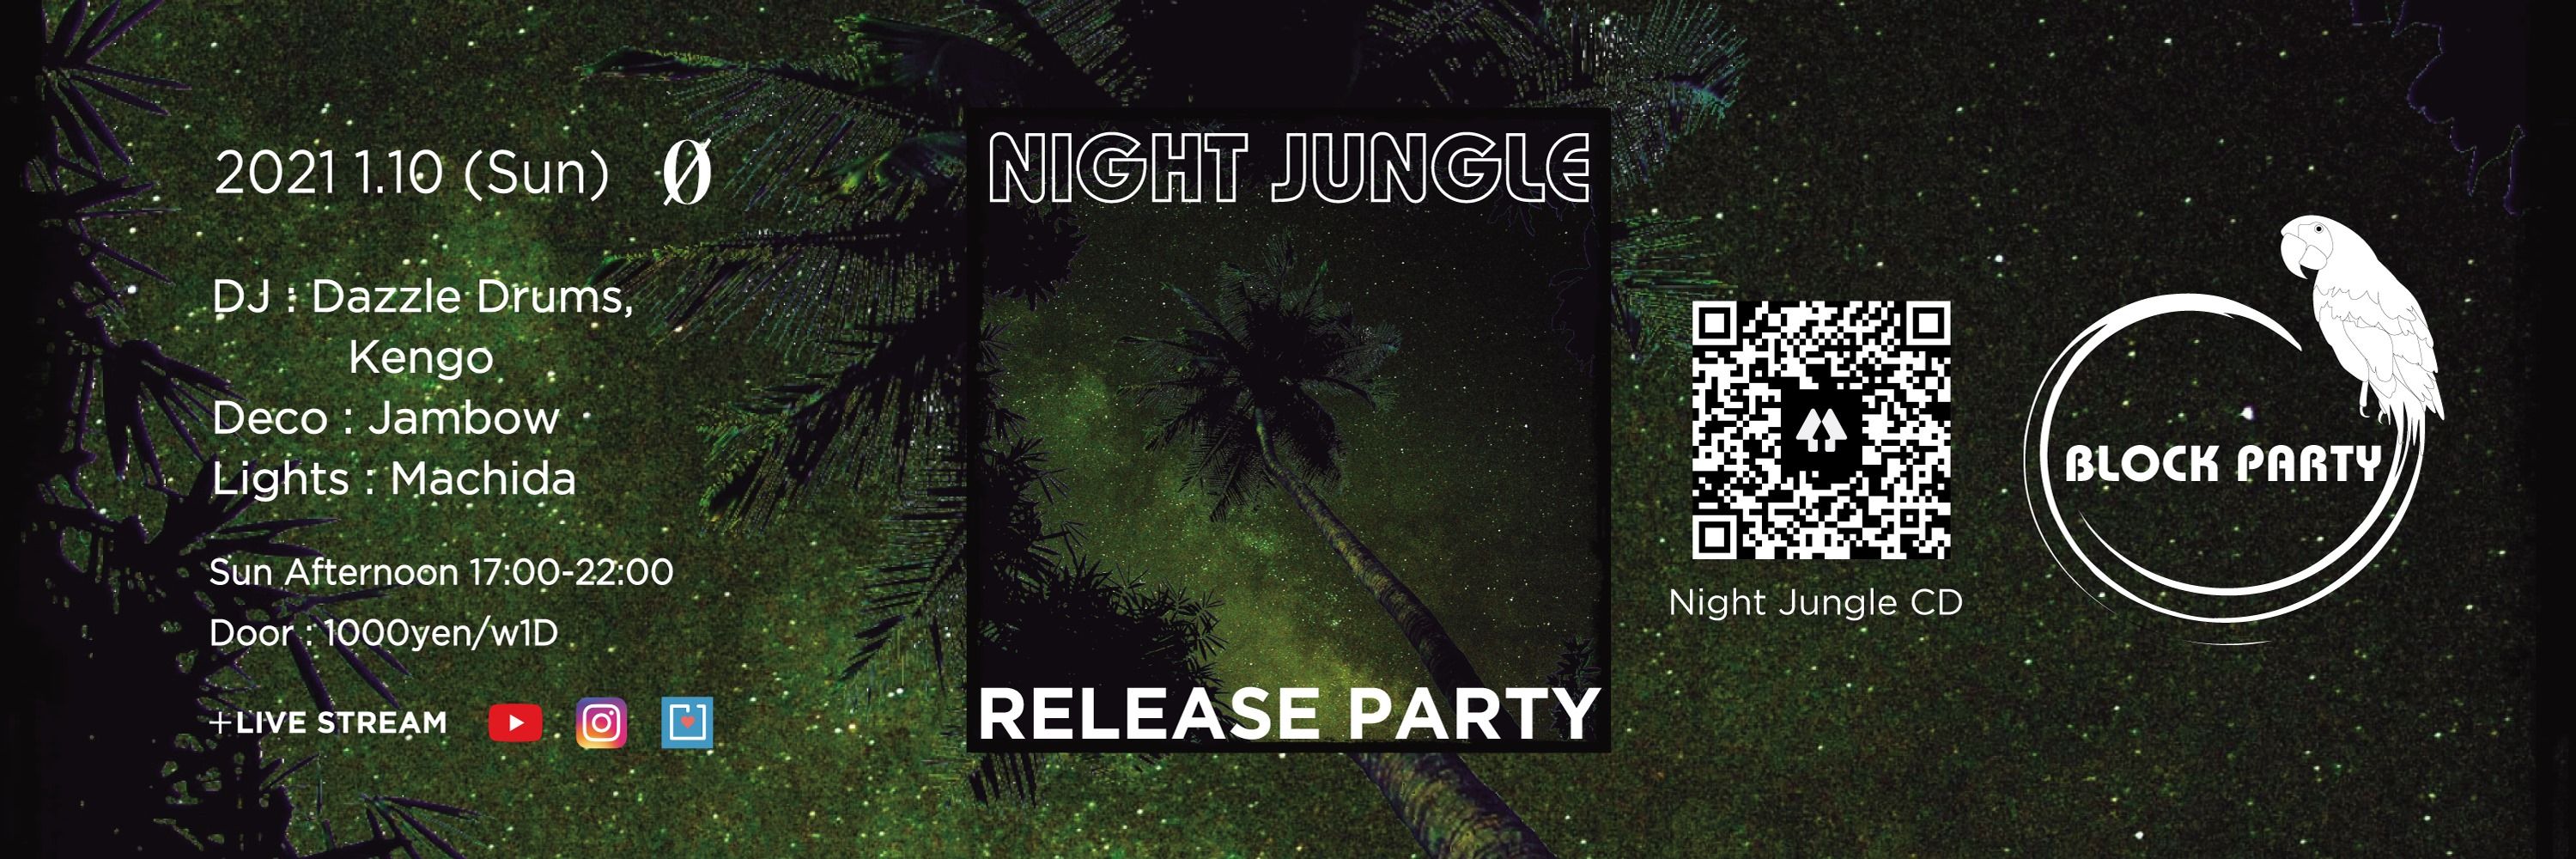 Block Party "Night Jungle Release Party" + Live Stream @ 0 Zero